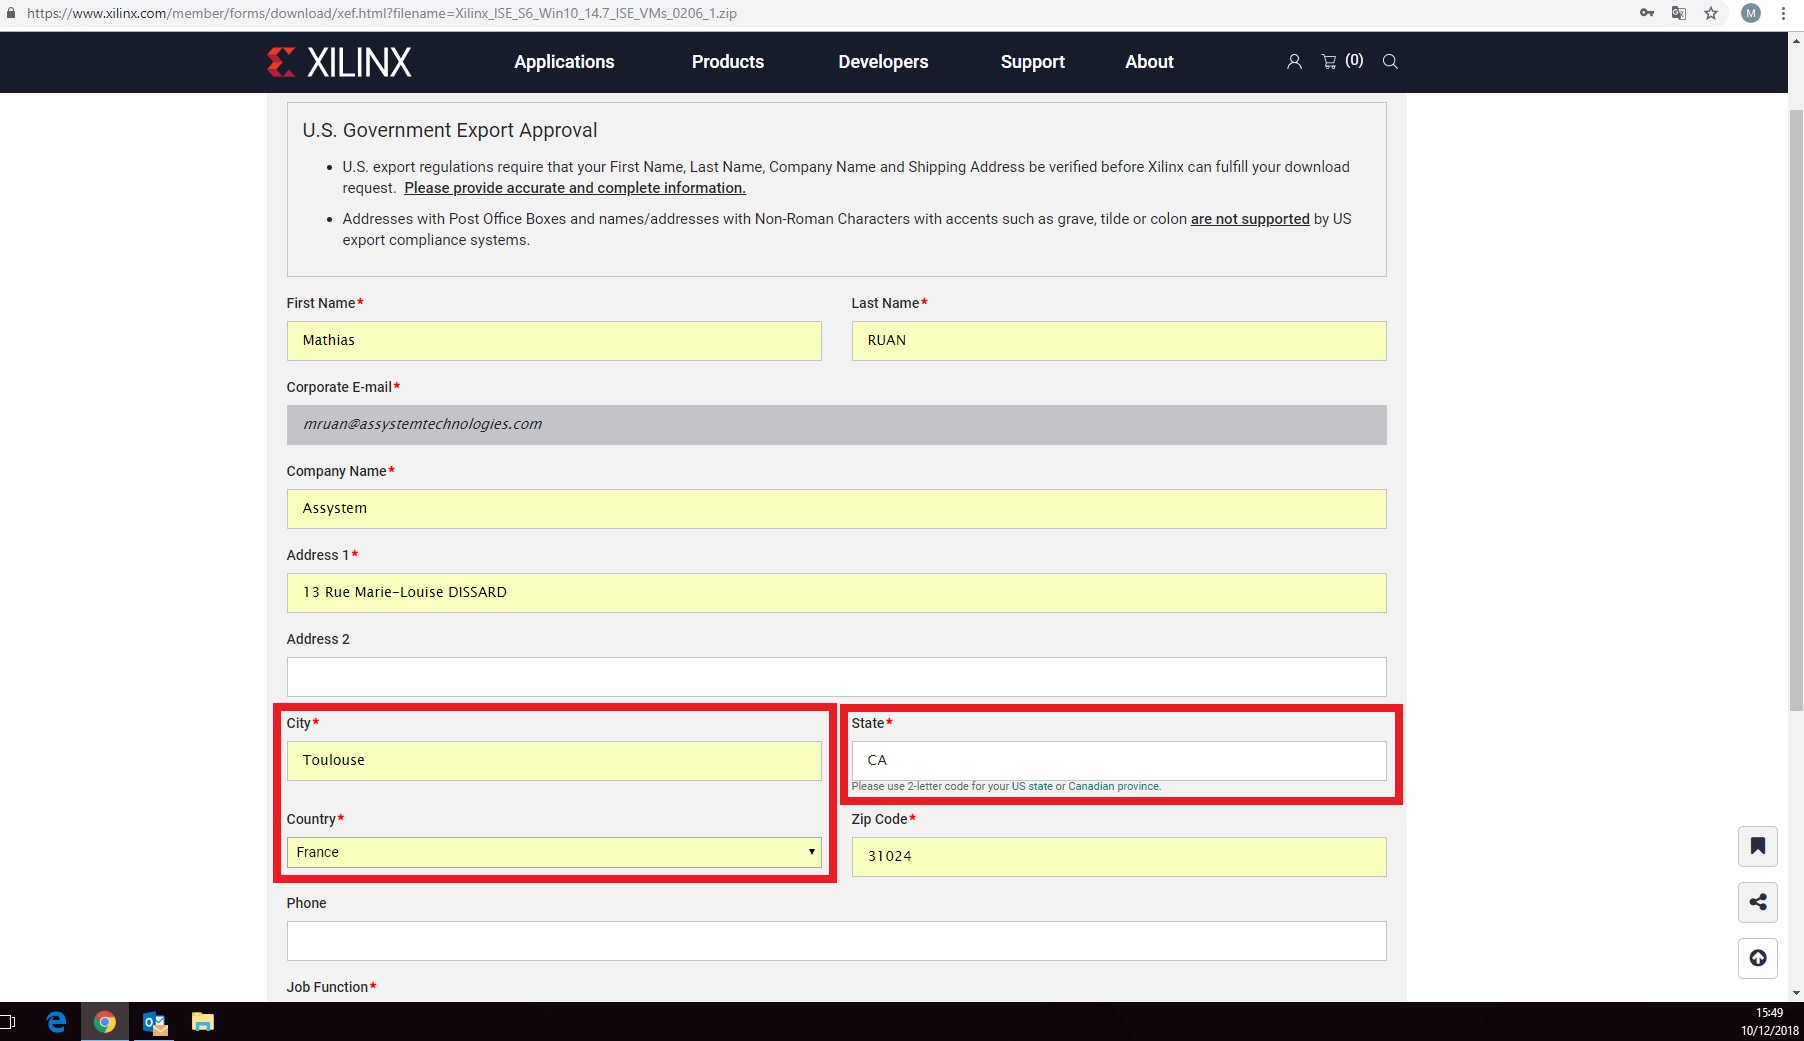 Xilinx Ise Design Suite Download